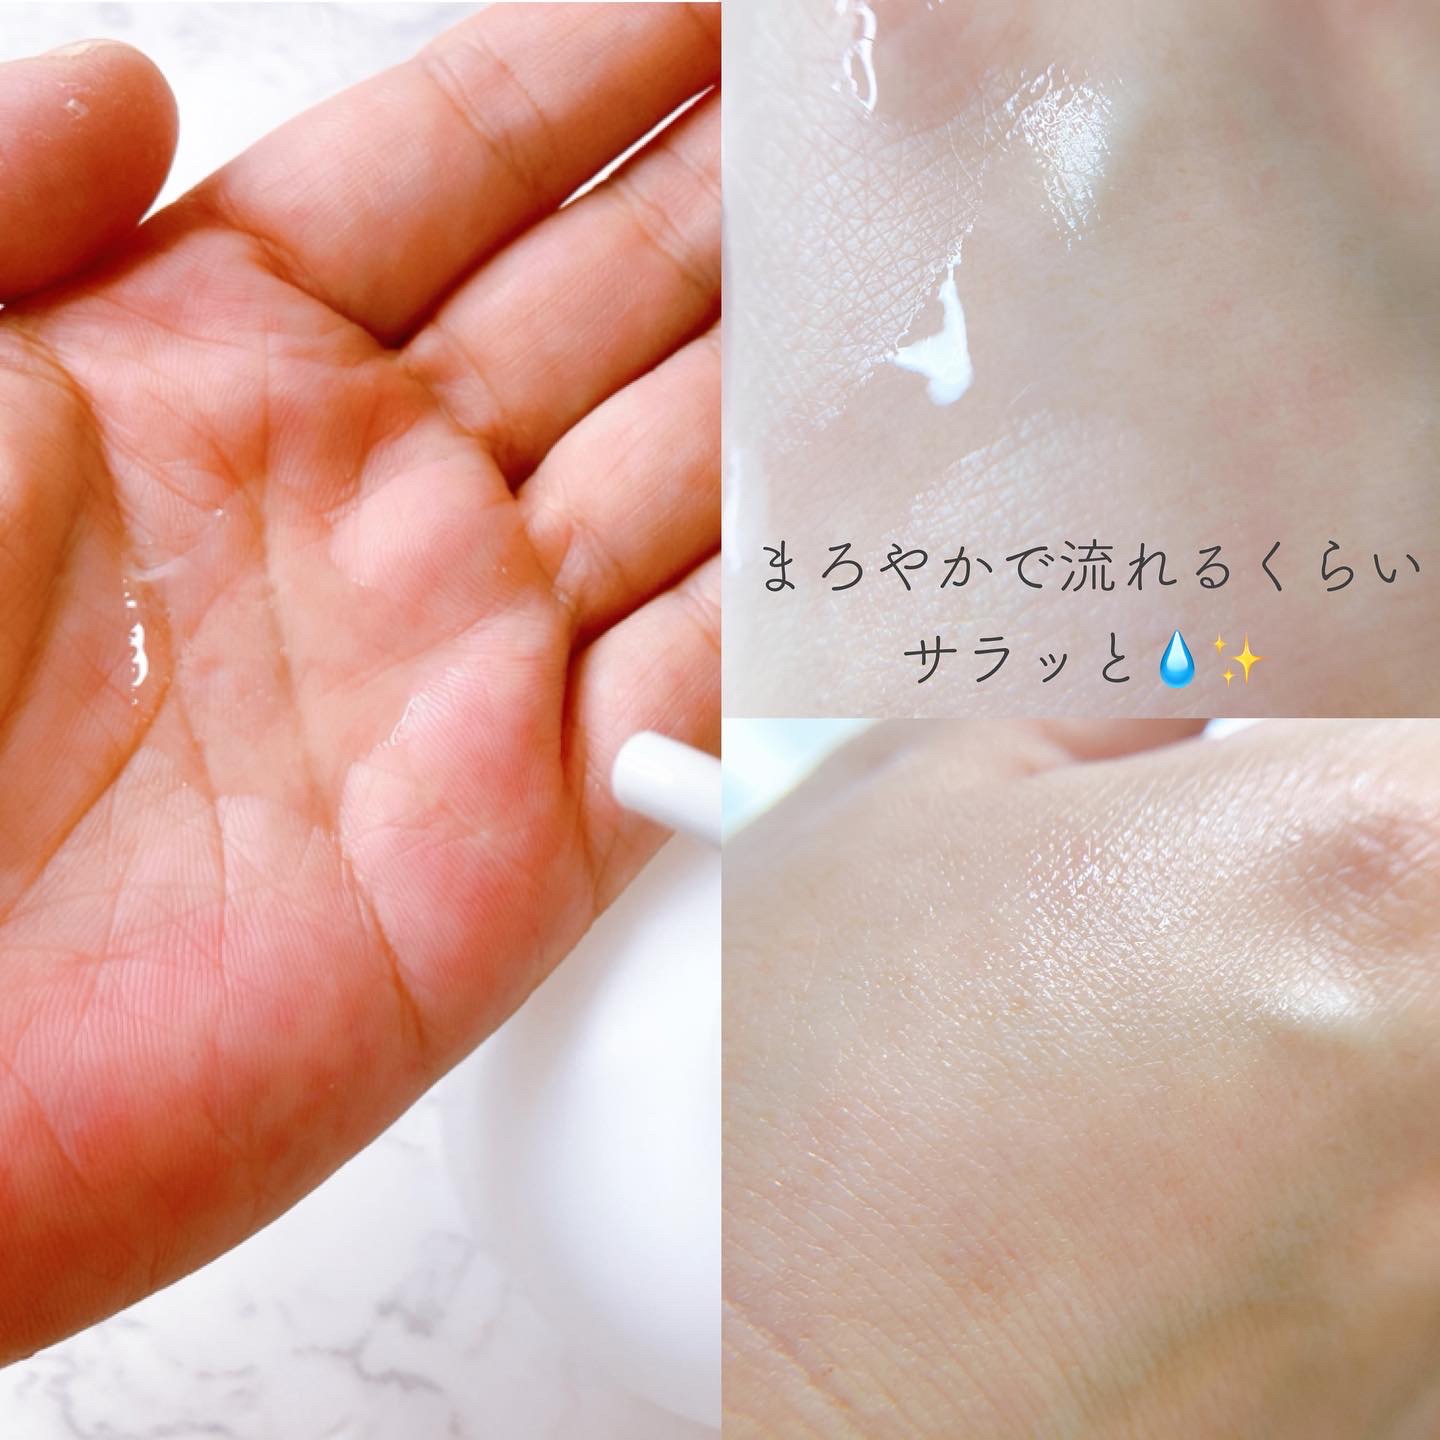 北海道産プロテオグリカン配合化粧水300ml／1,518円 税込を使ったメグさんのクチコミ画像4